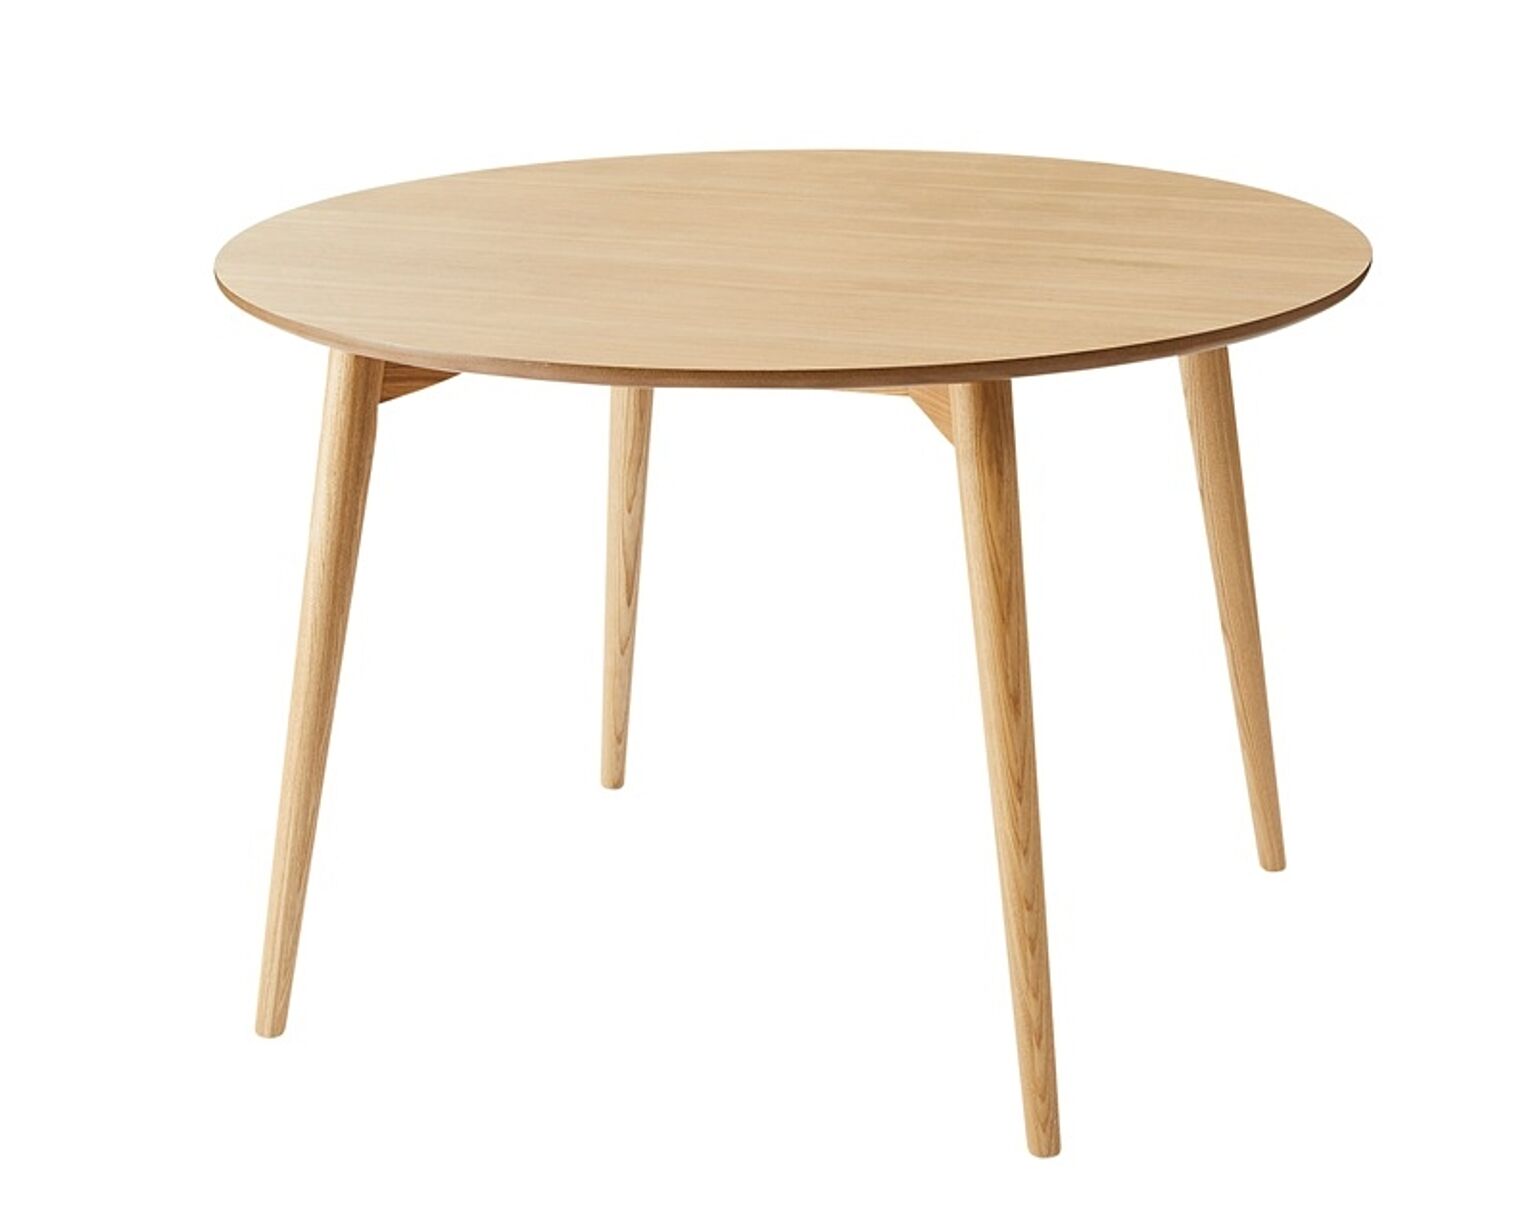 カラメリ 円形ダイニングテーブル W110×D110×H72 ナチュラル テーブル ダイニングテーブル 円形 丸形 ナチュラル 北欧 シンプル 天然木 アッシュ ハの字 かわいい 幅110cm 4人用